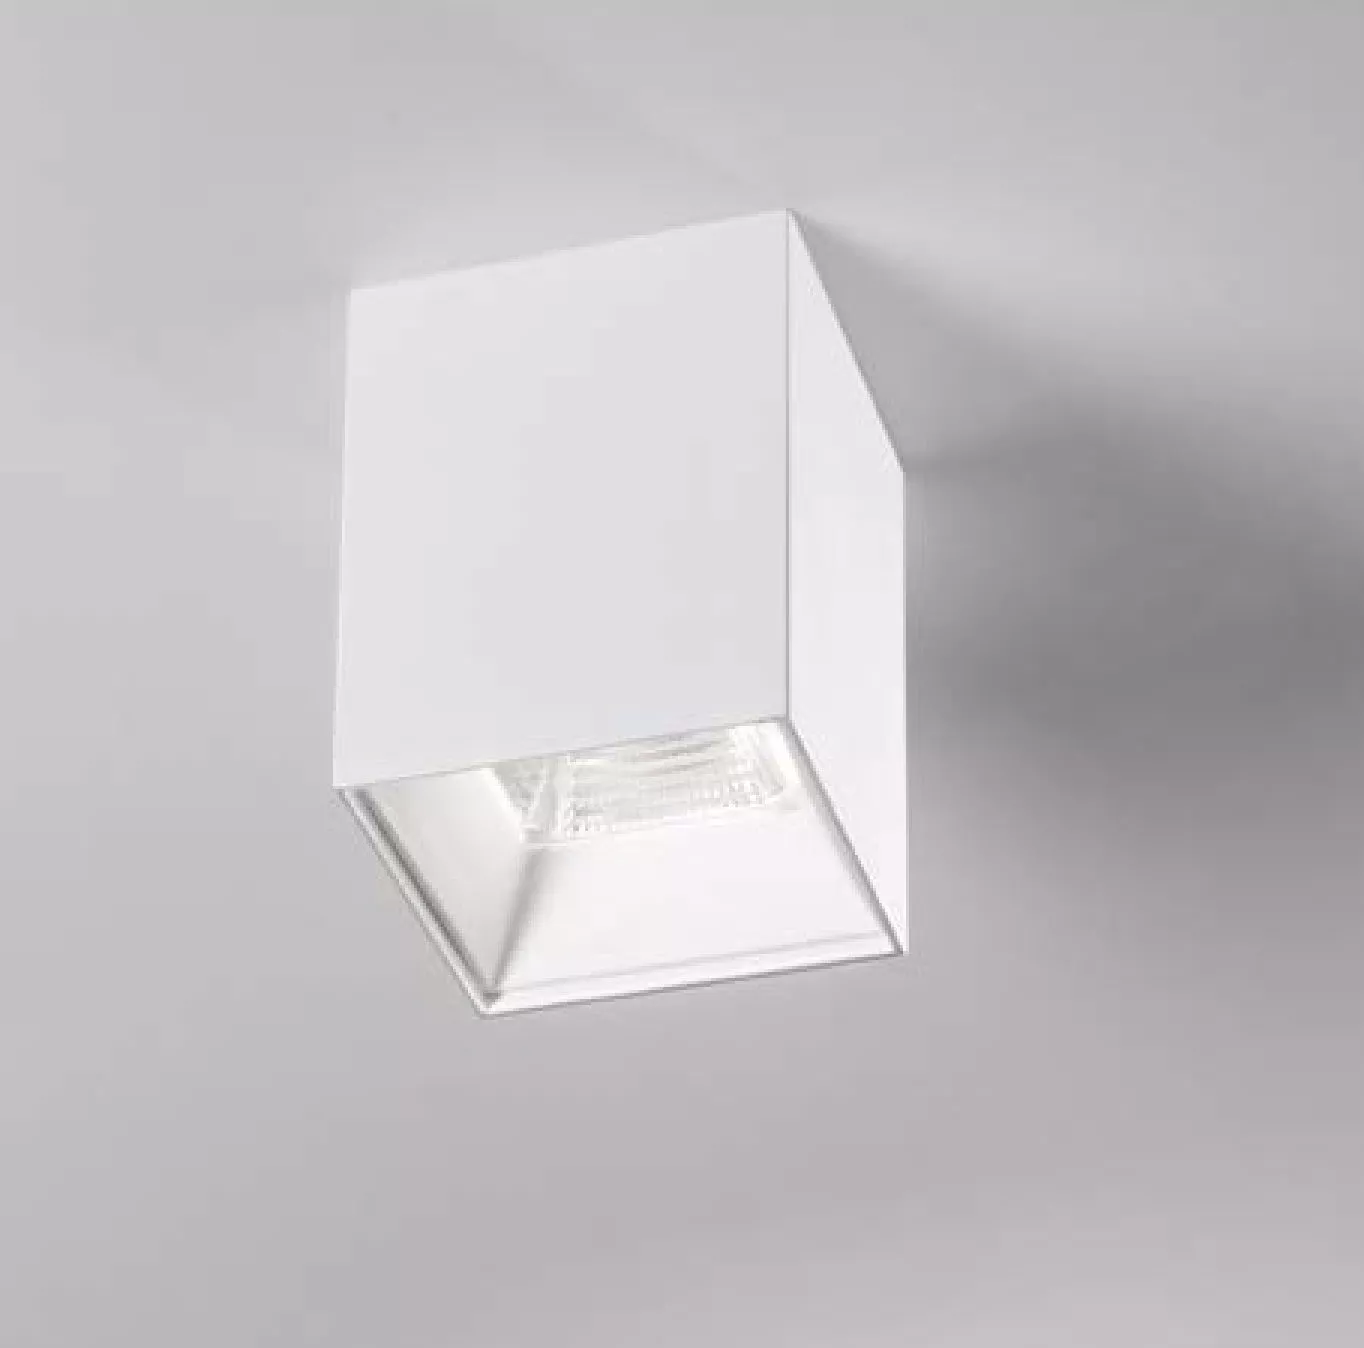 Isyluce faretto led 4000k 12w cubo soffitto metallo bianco quadrato design  - 926N